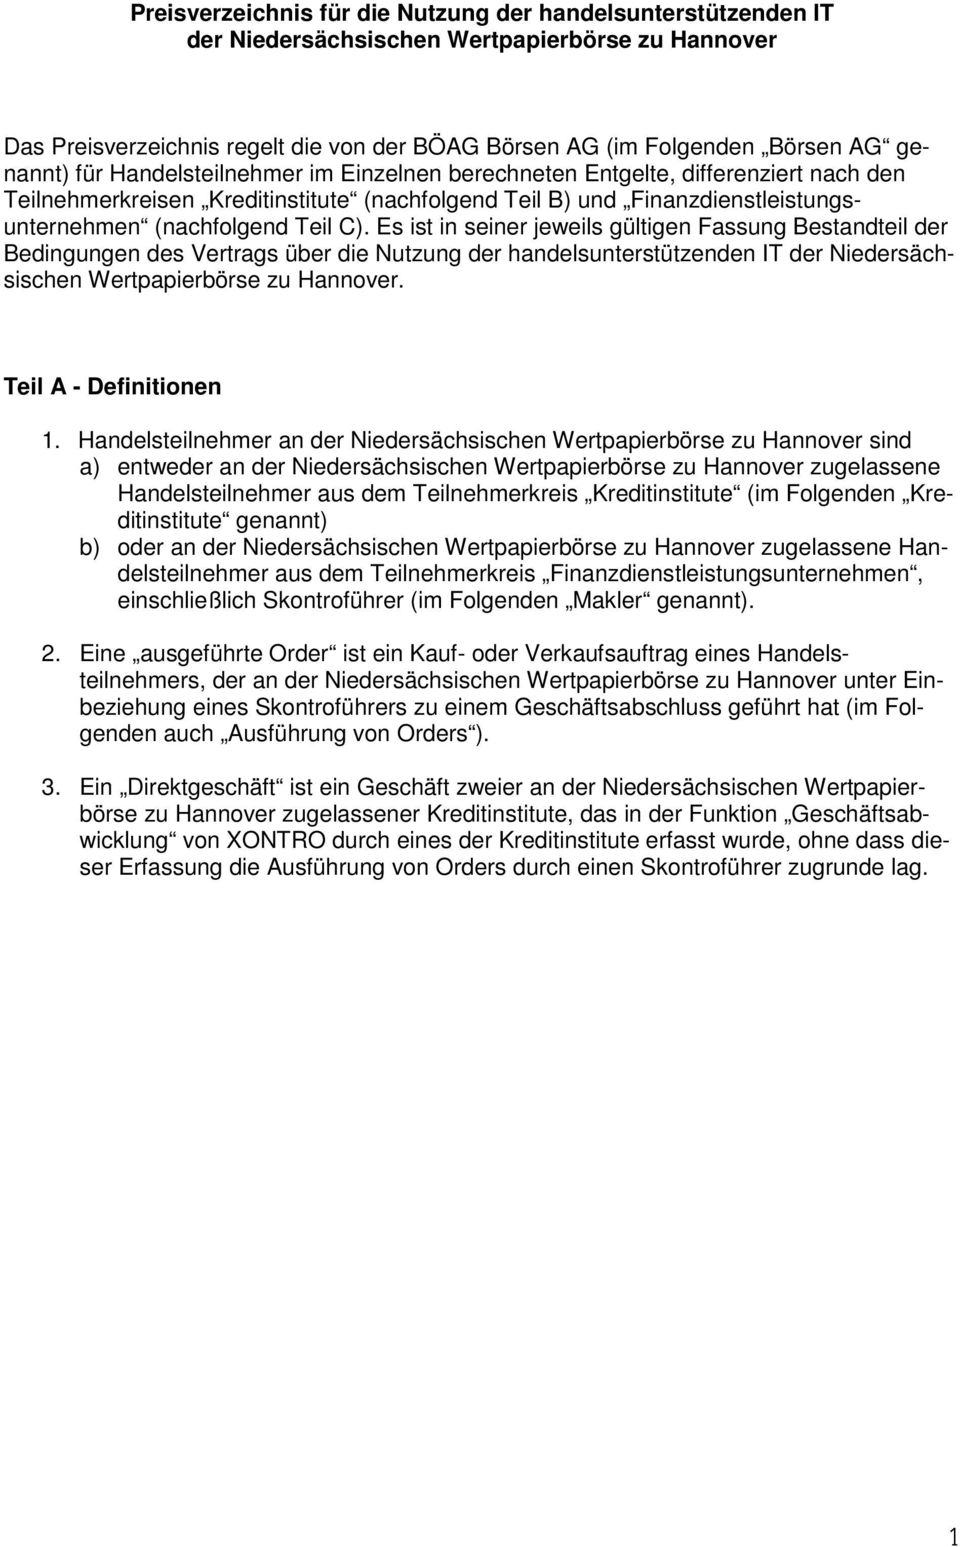 C). Es ist in seiner jeweils gültigen Fassung Bestandteil der Bedingungen des Vertrags über die Nutzung der handelsunterstützenden IT der Niedersächsischen Wertpapierbörse zu Hannover.